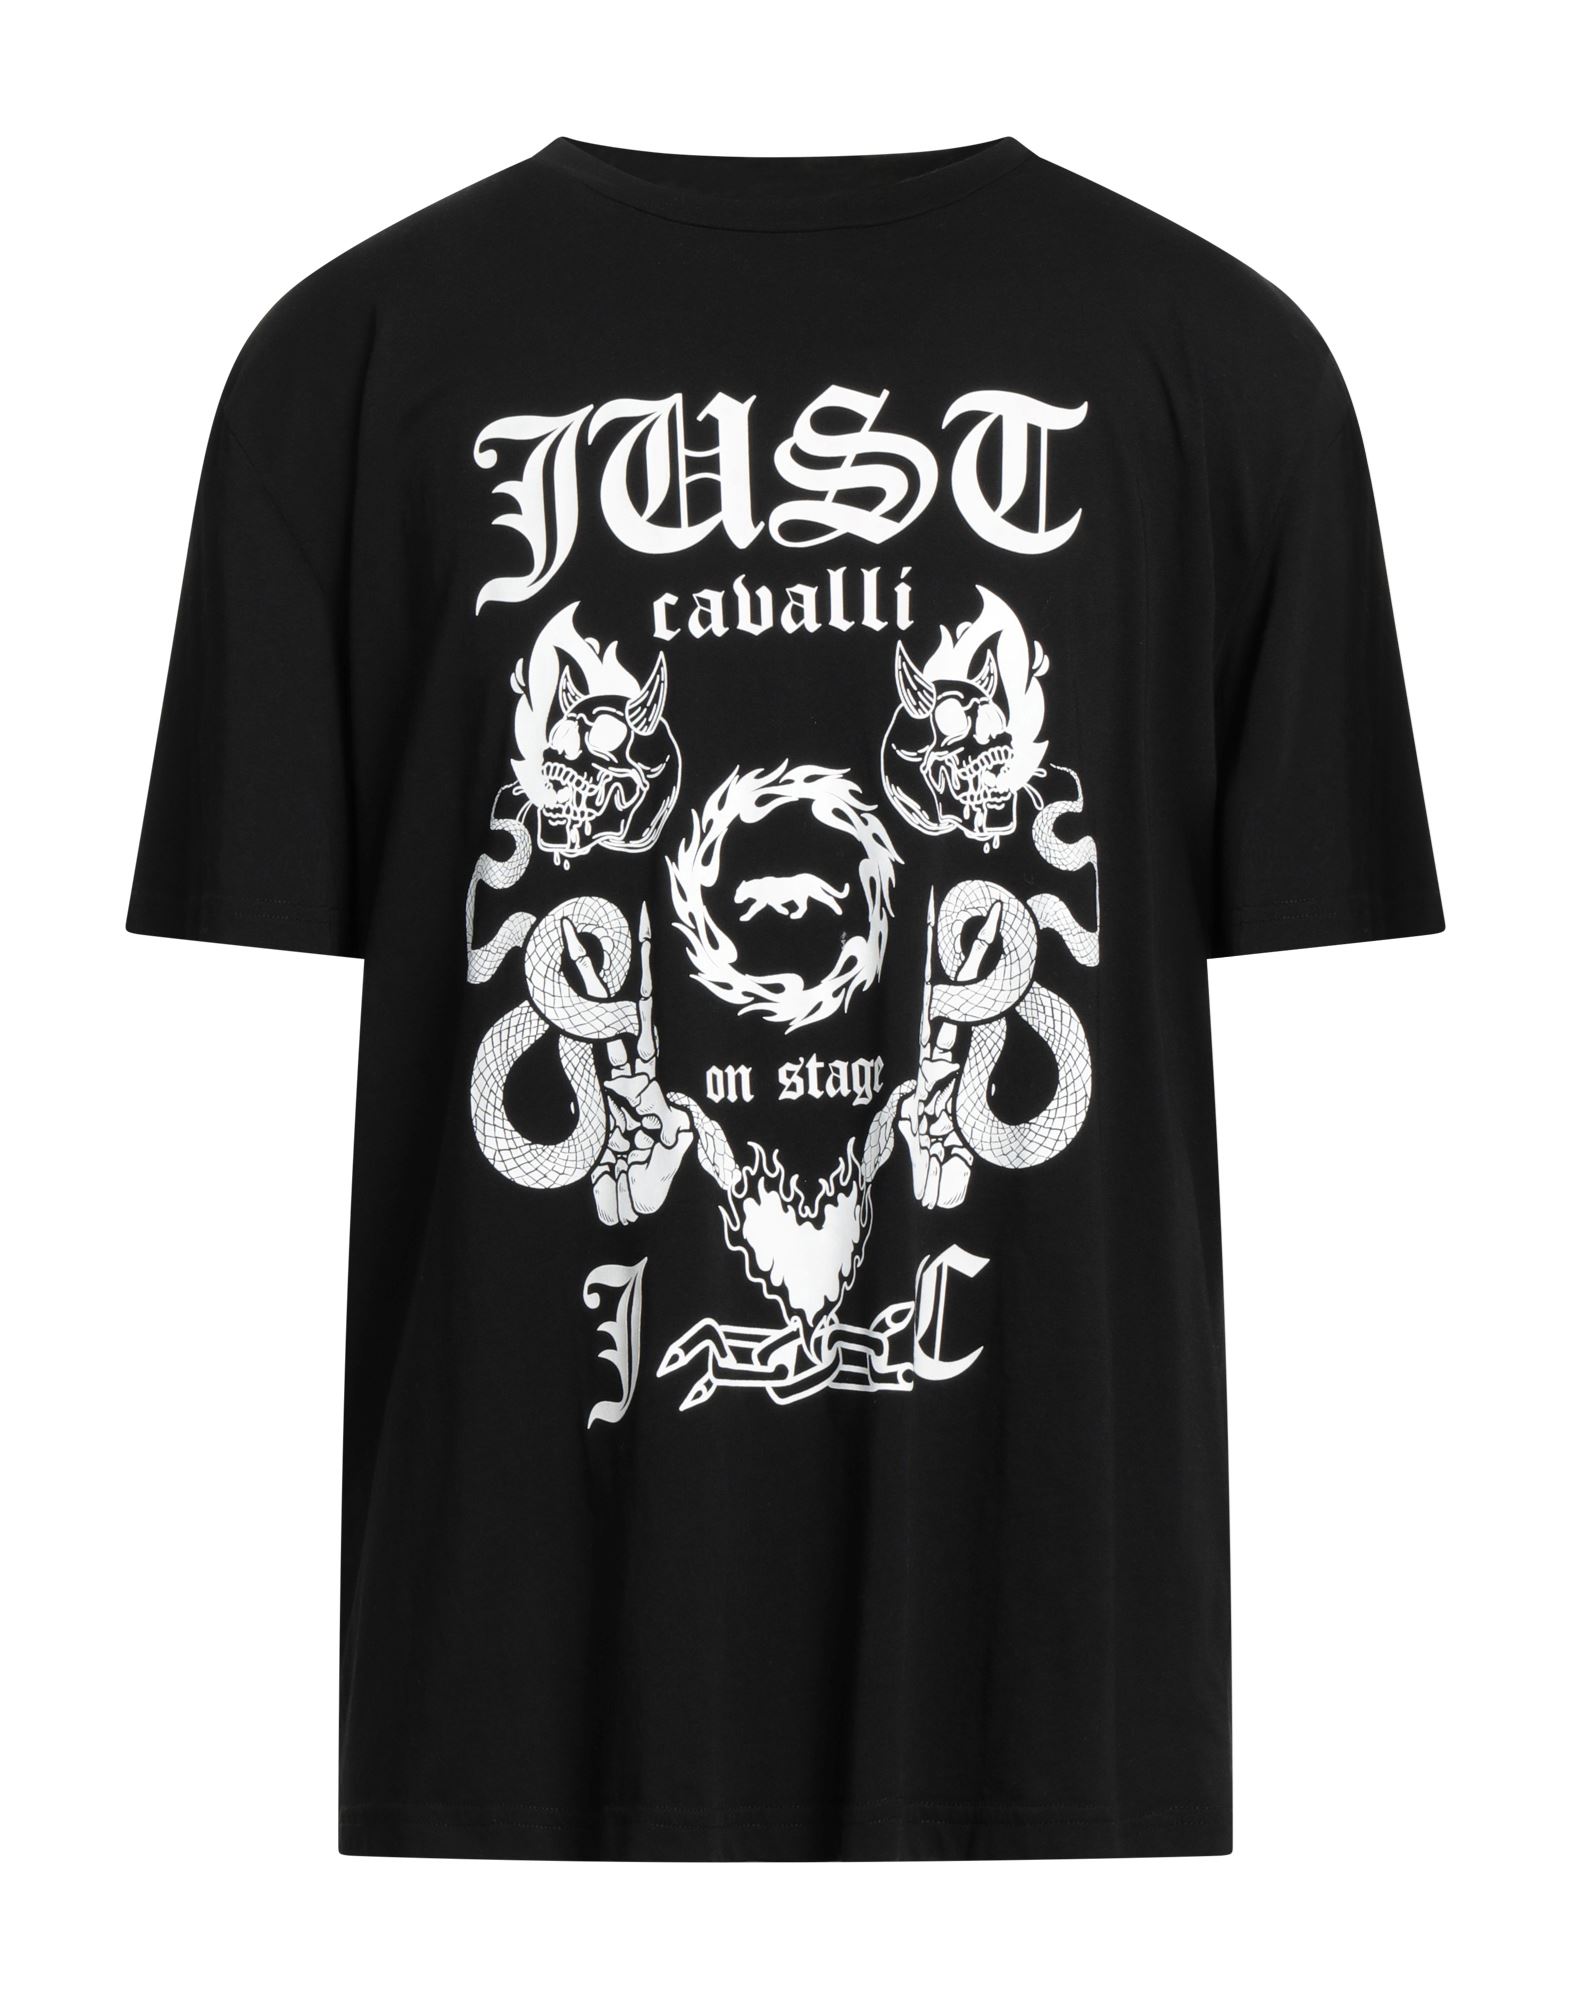 Just Cavalli T-shirts In Black